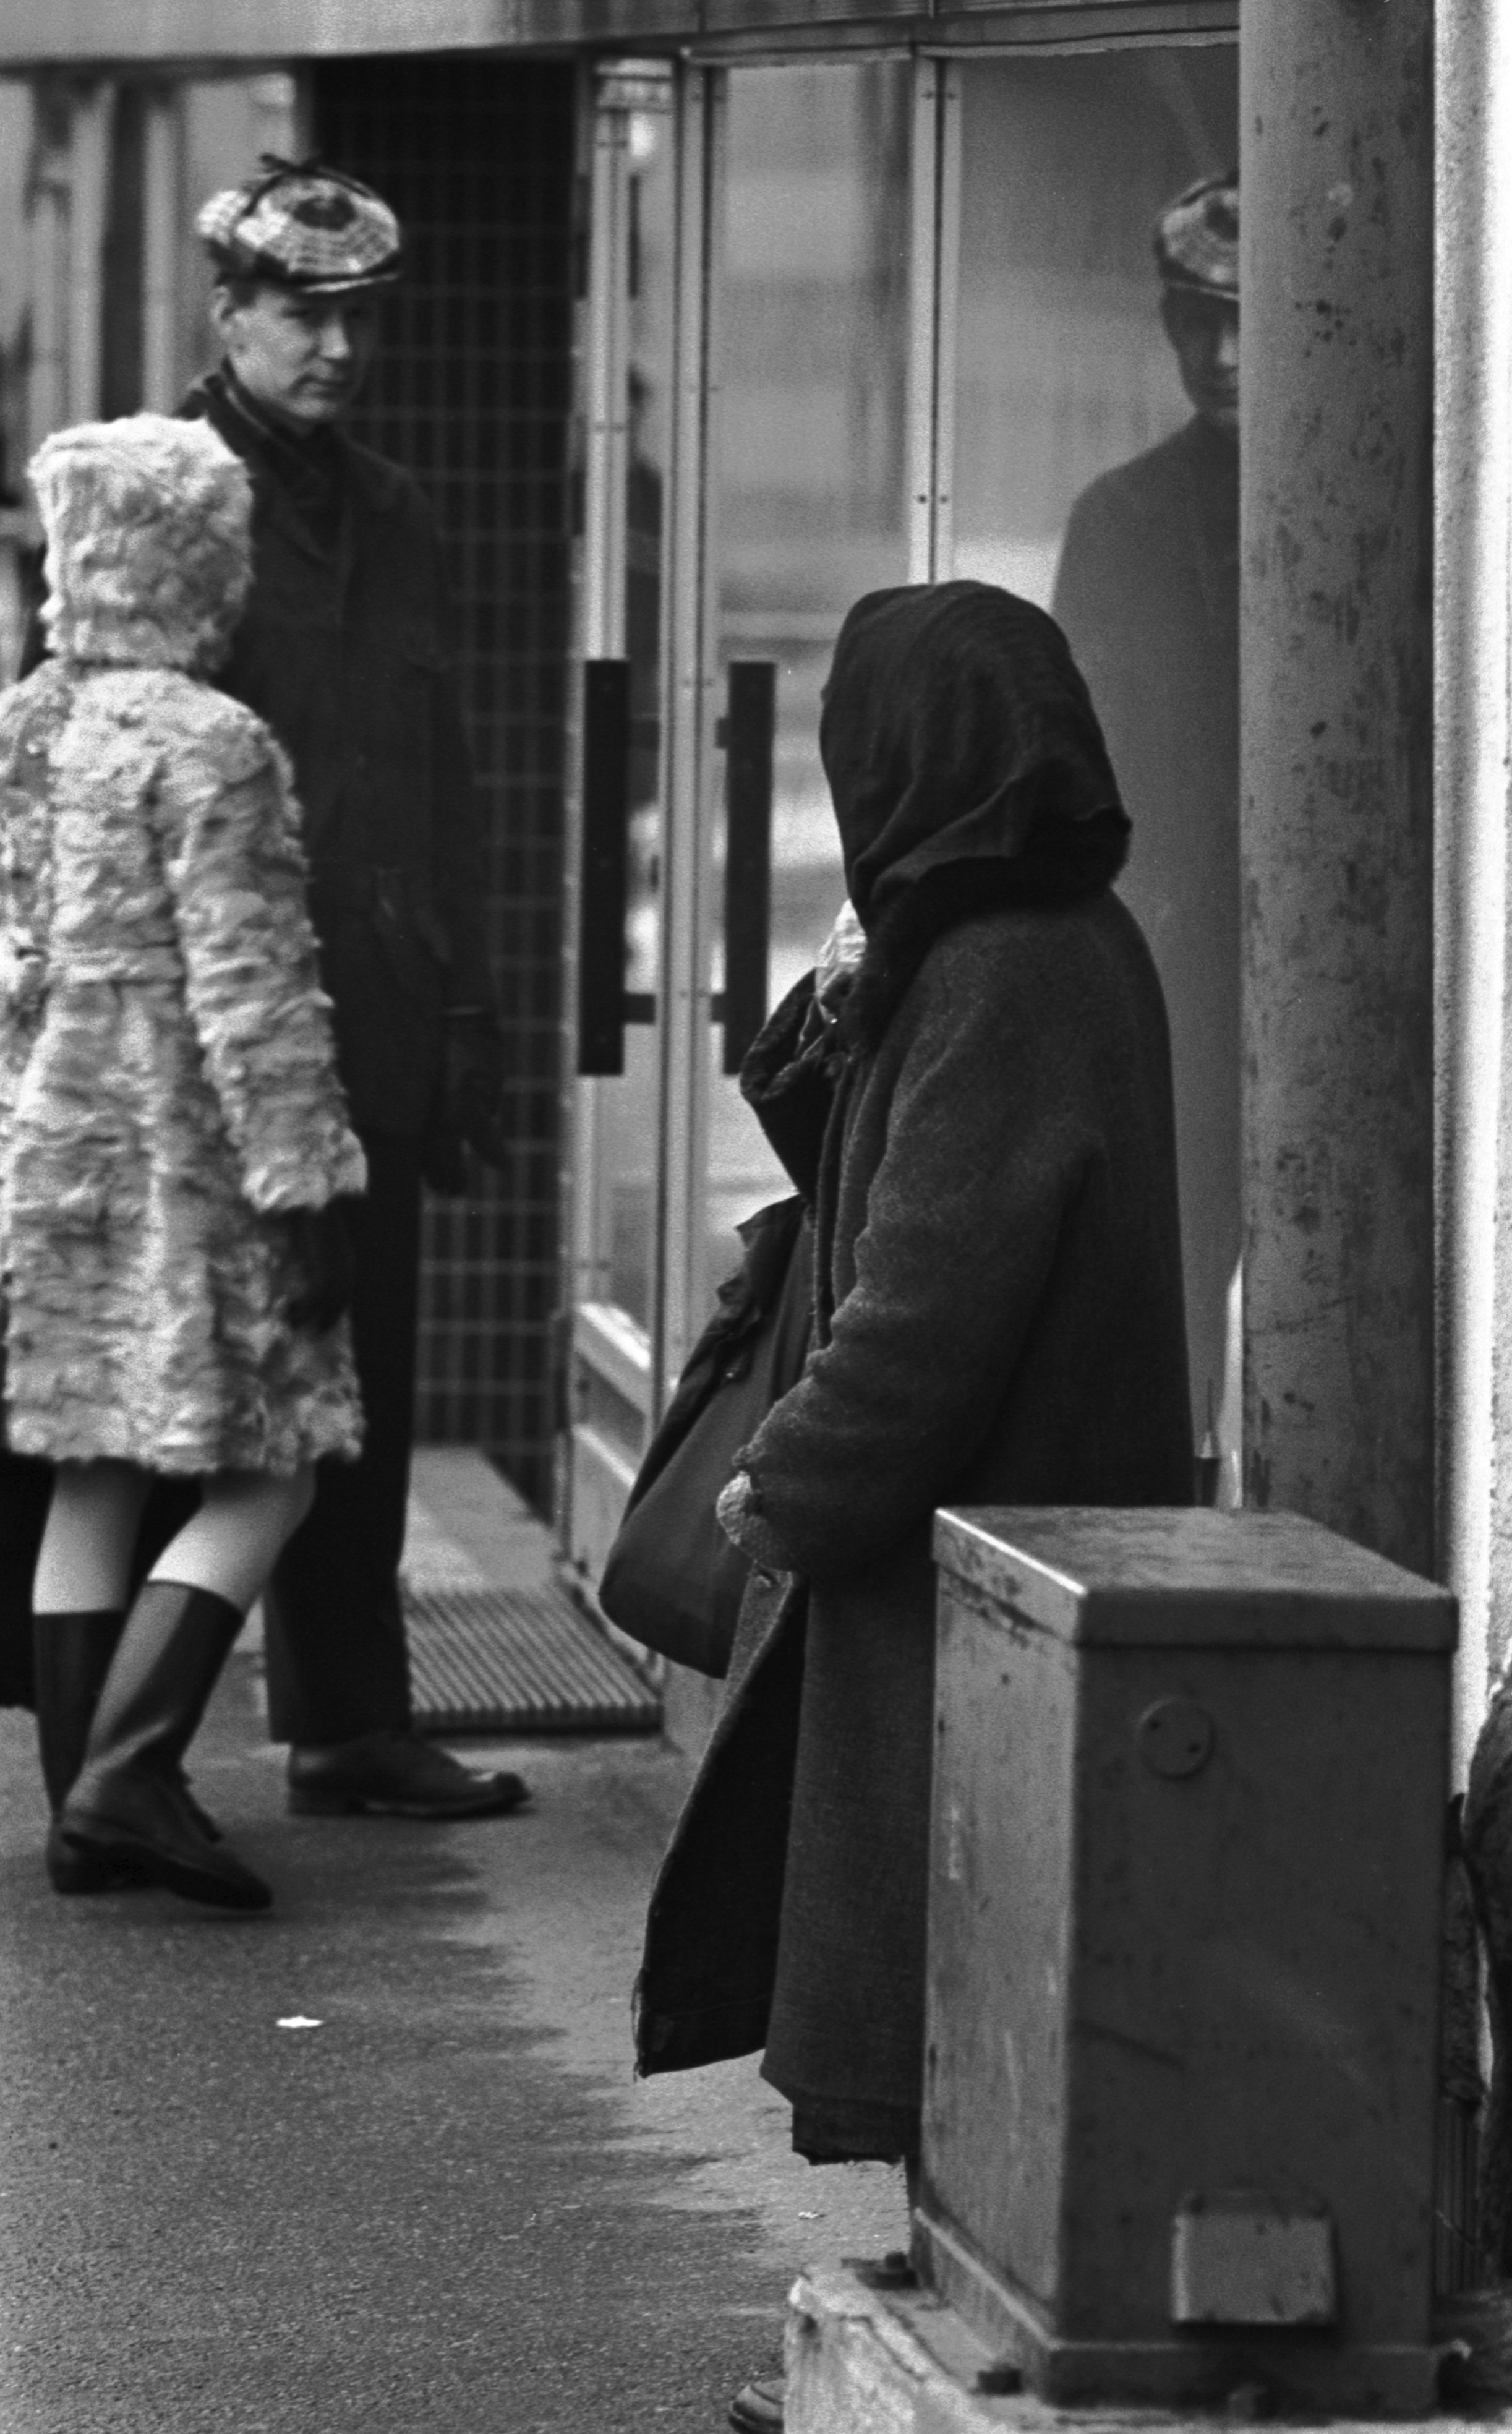 Viides linja 10. Vanha, huppupäinen nainen jakokaapin vieressä Viidennellä linjalla Porthaninkadun kulmilla.